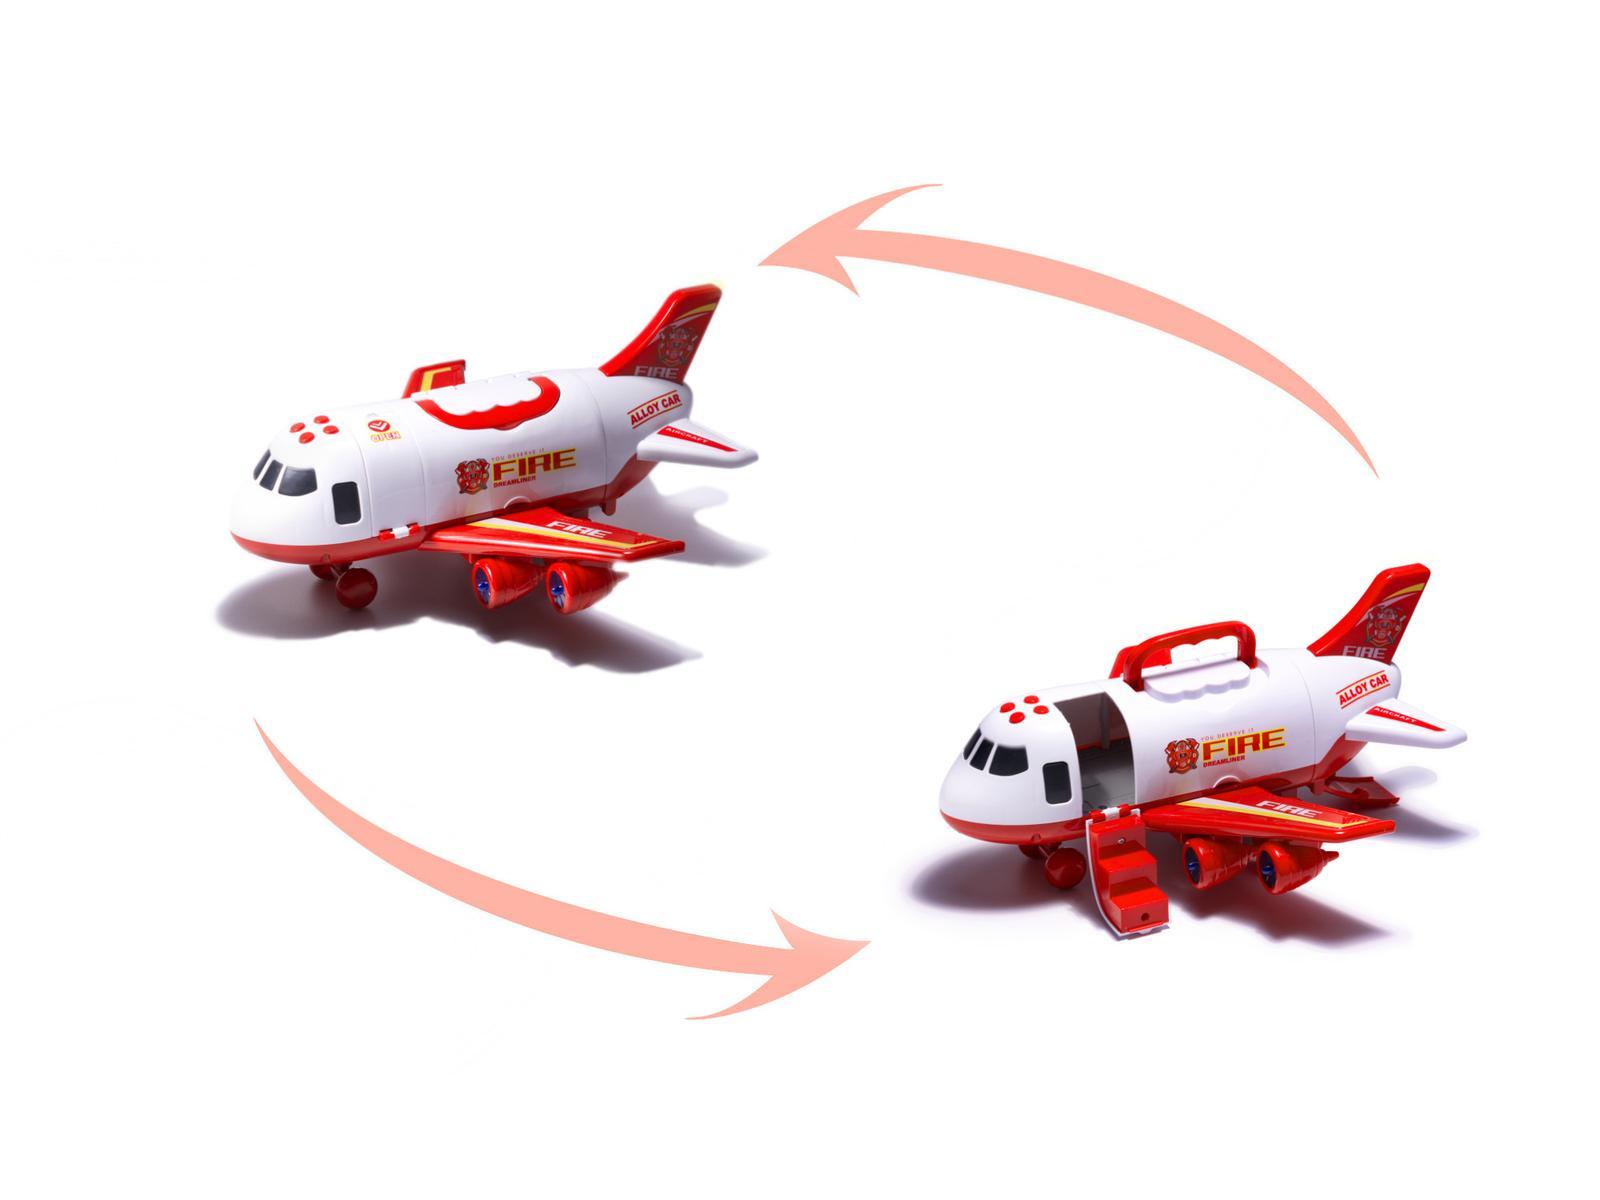 Transporter samolot + 3 pojazdy straż pożarna zabawka dla dzieci czerwona 41,5x31,5x14 cm nr. 6